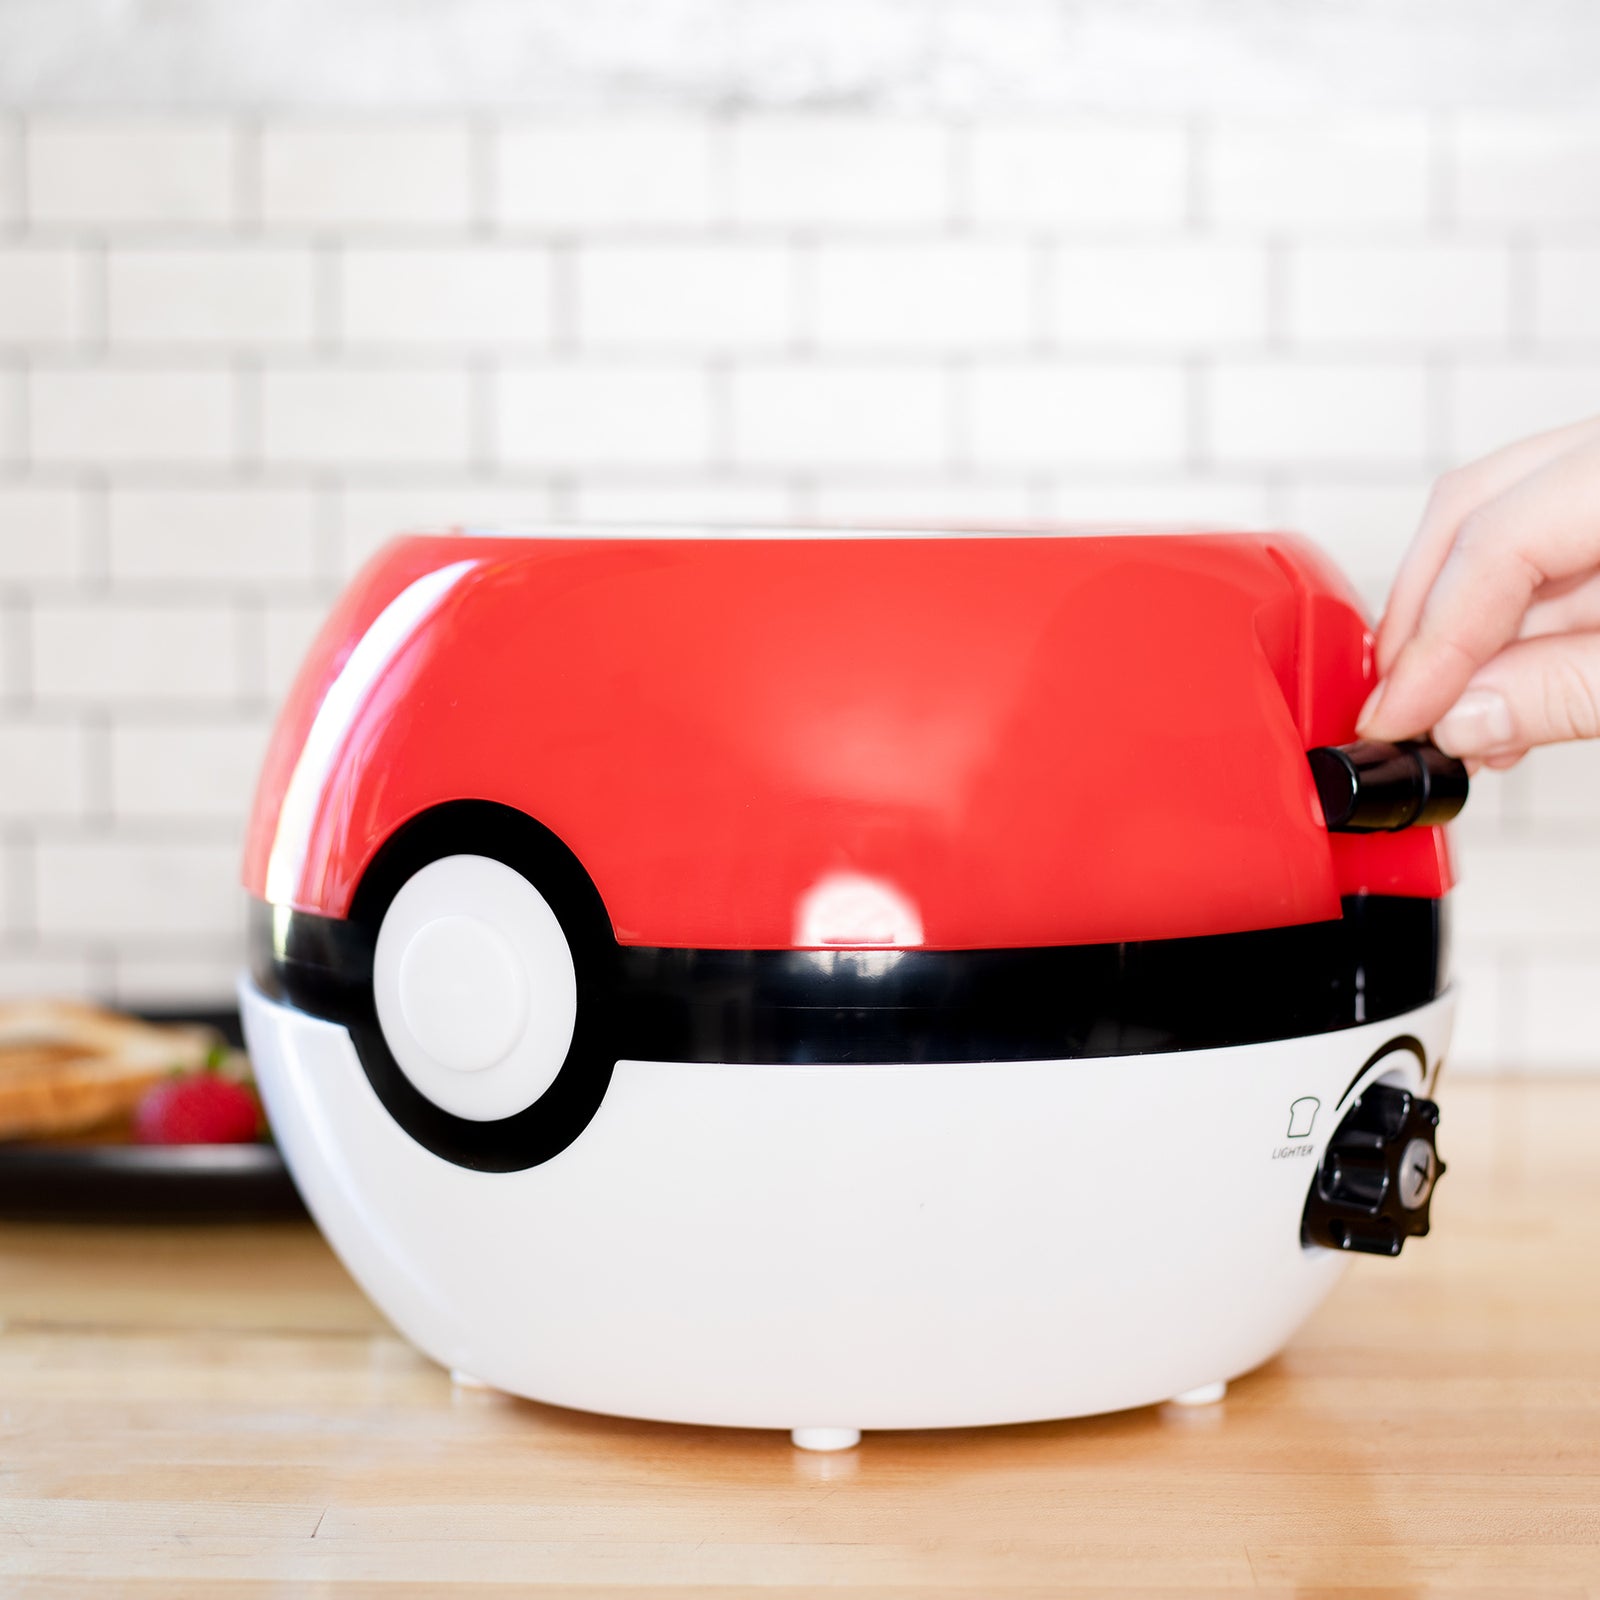  Uncanny Brands Pokémon Pokeball Popcorn Maker- Pokémon